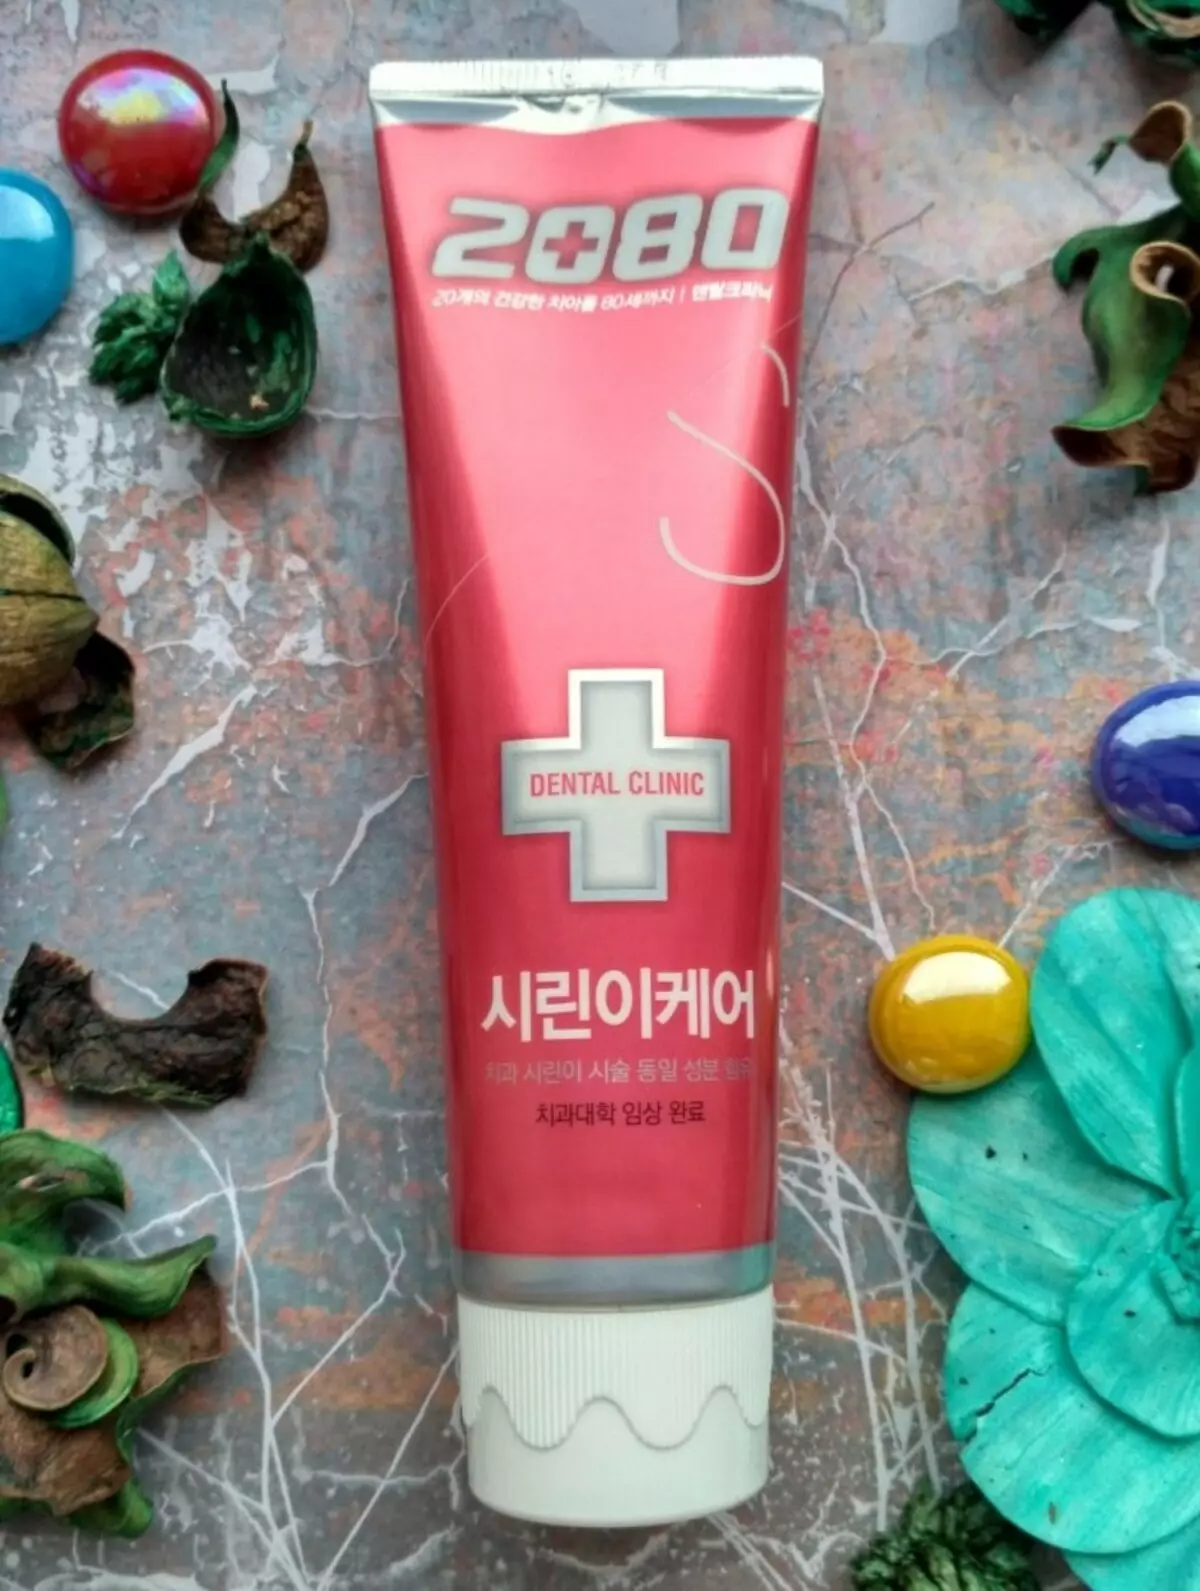 Pasta de dientes Clínica dental 2080: Pro Max de Corea y pasta de blanqueamiento, brillante blanco y contra piedras, niños y otros productos 24050_4